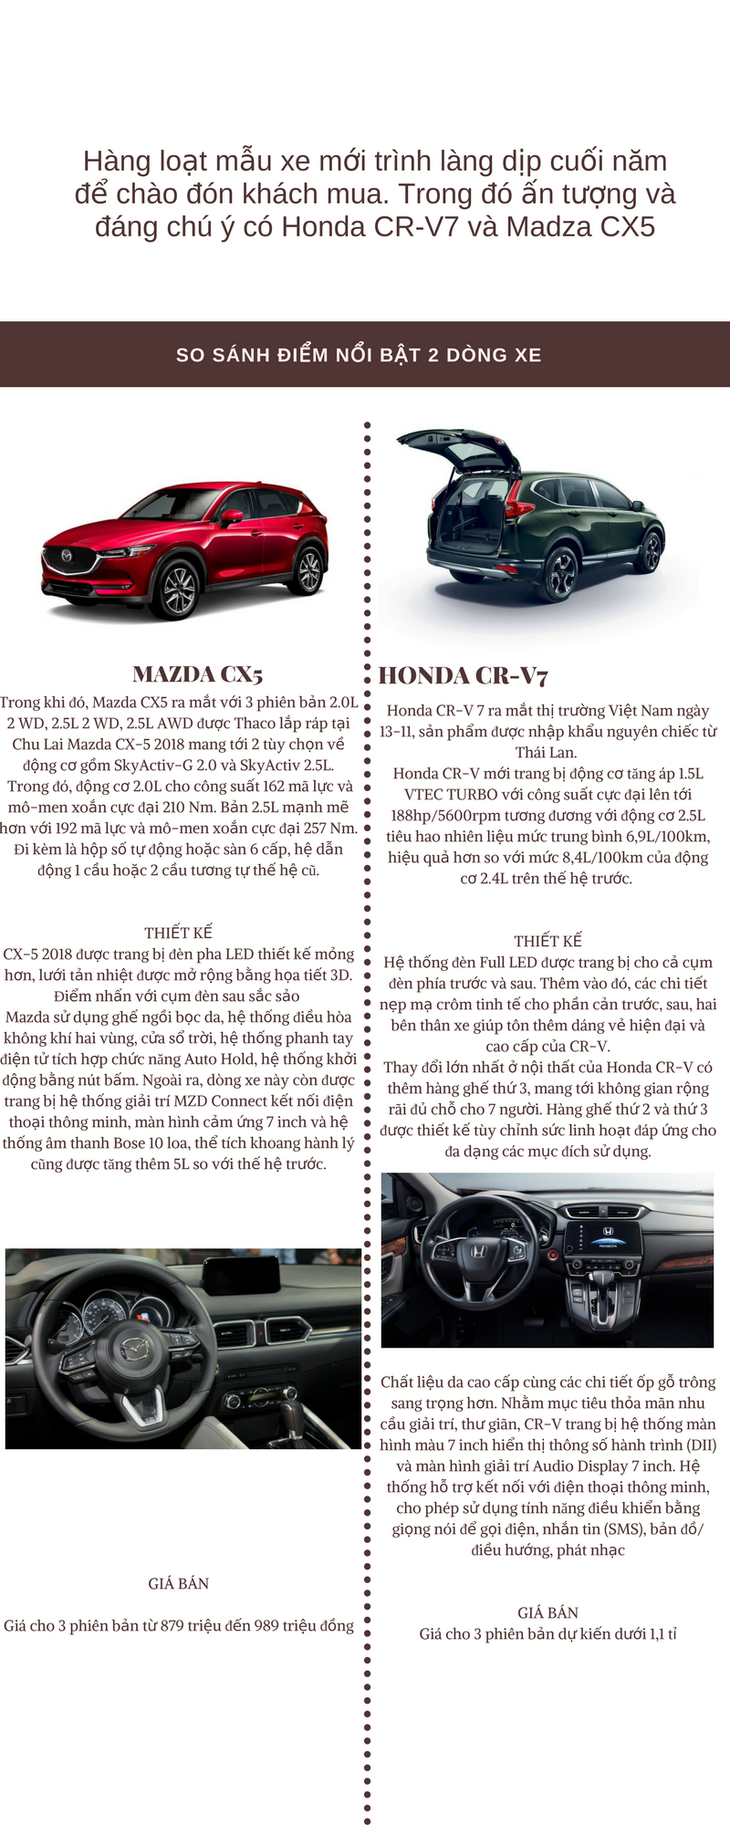 So sánh Honda CR-V7 và Madza CX5 - Ảnh 1.